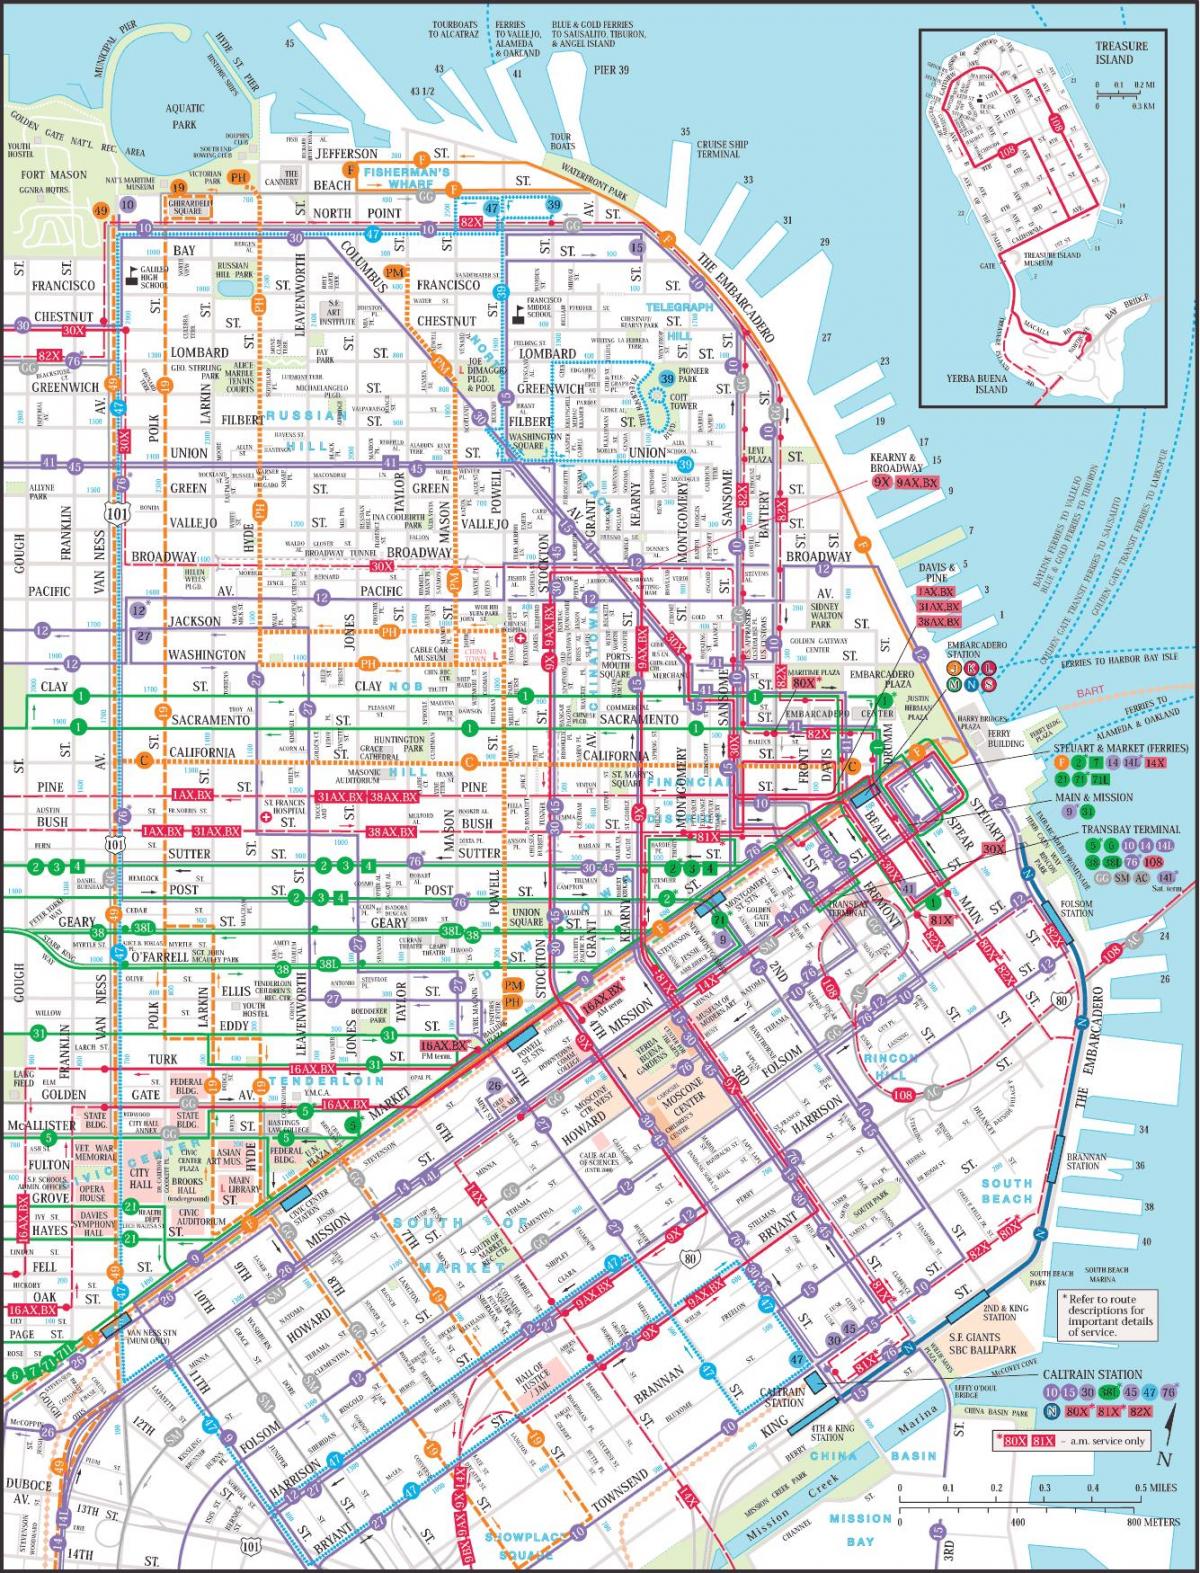 Сан-Франциско общественного транспорта карте